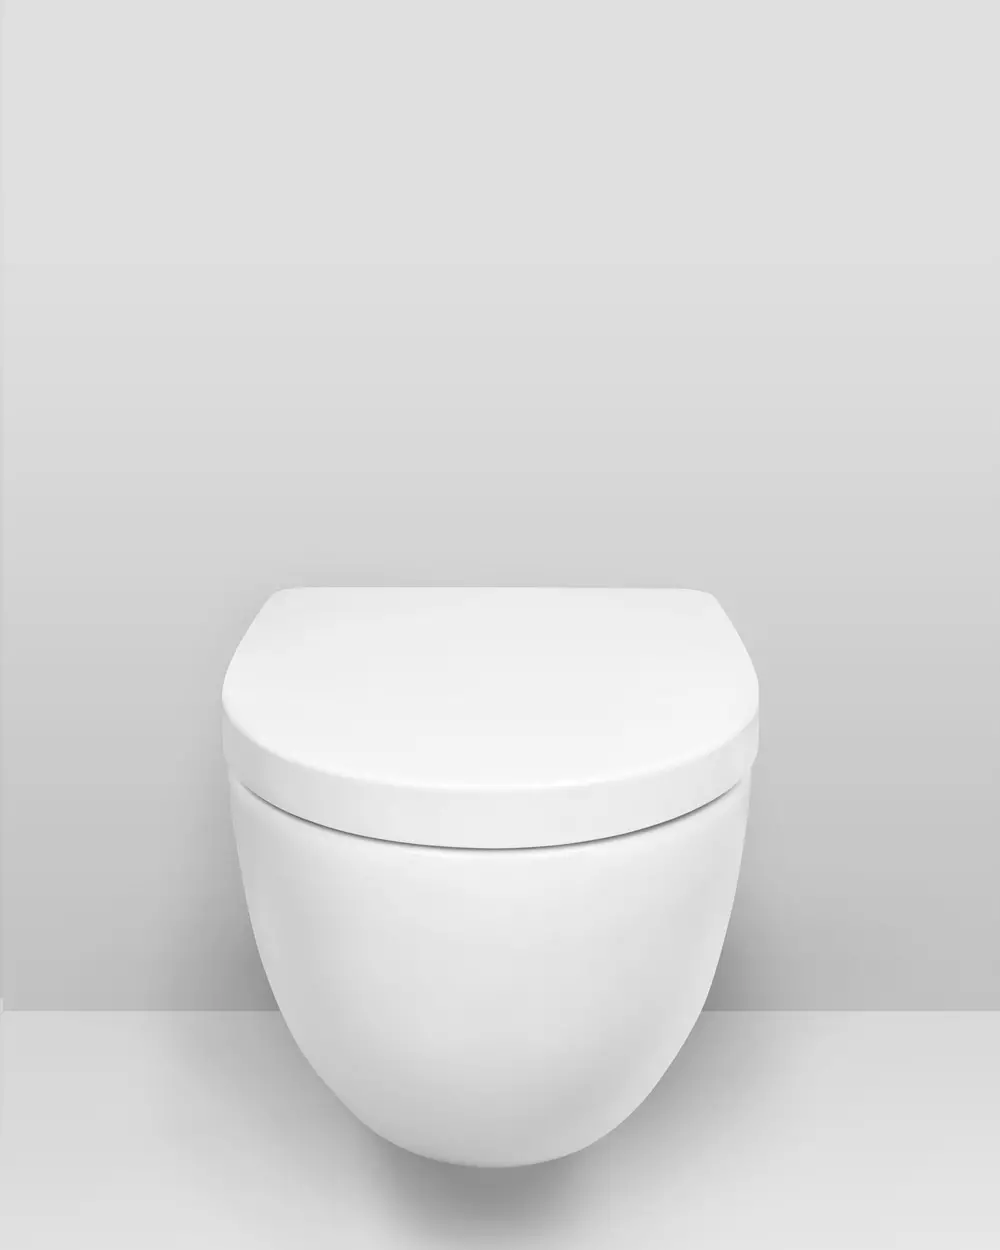 टॉयलेट (75 फोटो) असणे: ते काय आहे? रिमशिवाय शौचालय बाउल्सचे गुण आणि विवेक, फिल्टर मॉडेल आणि शौचालय बॉल कॉम्पॅक्ट, पुनरावलोकने 10547_42